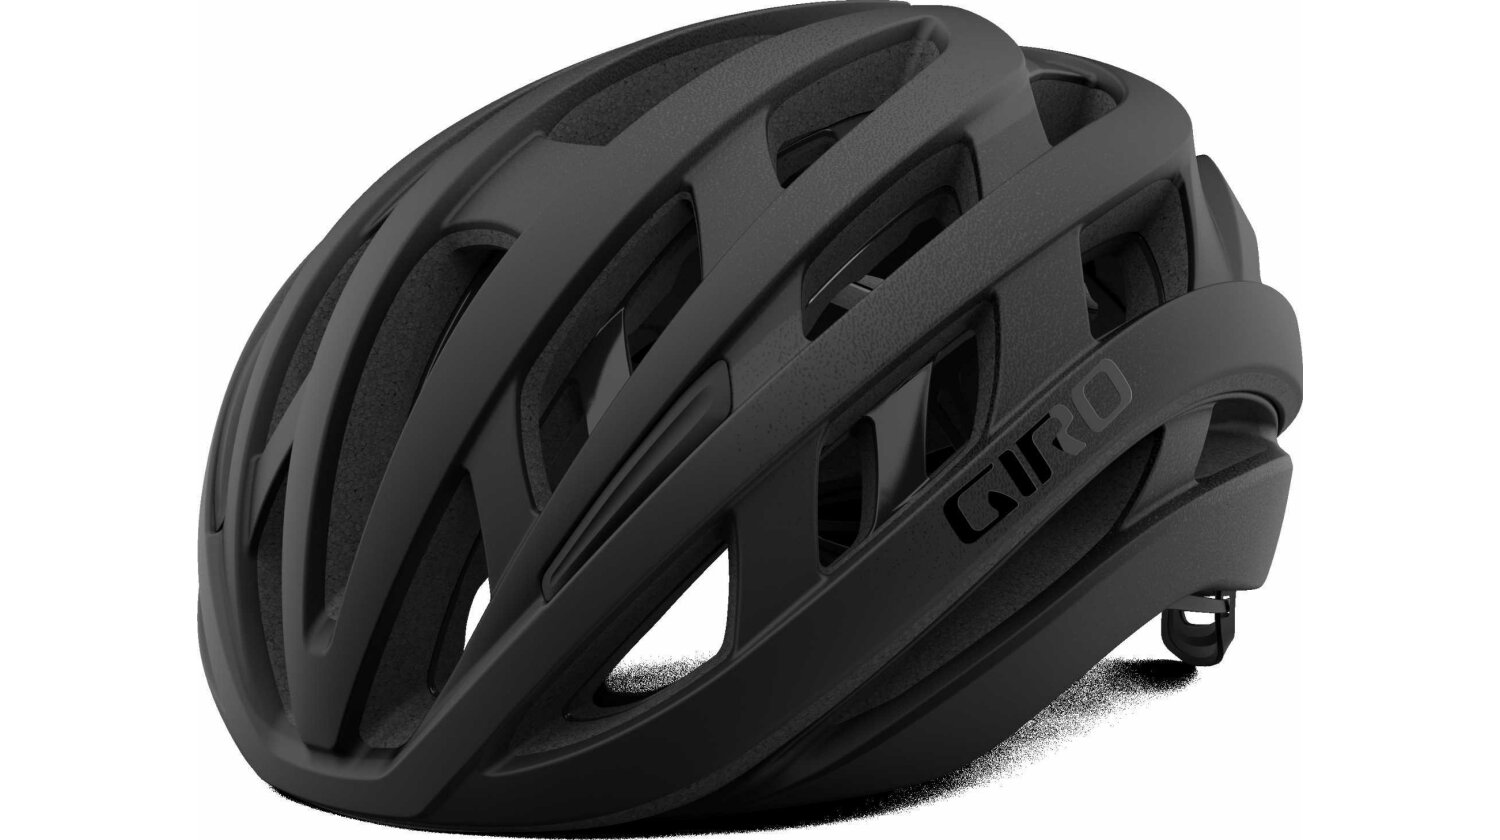 Giro Helios Spherical Mips Rennrad-Helm matte black fade